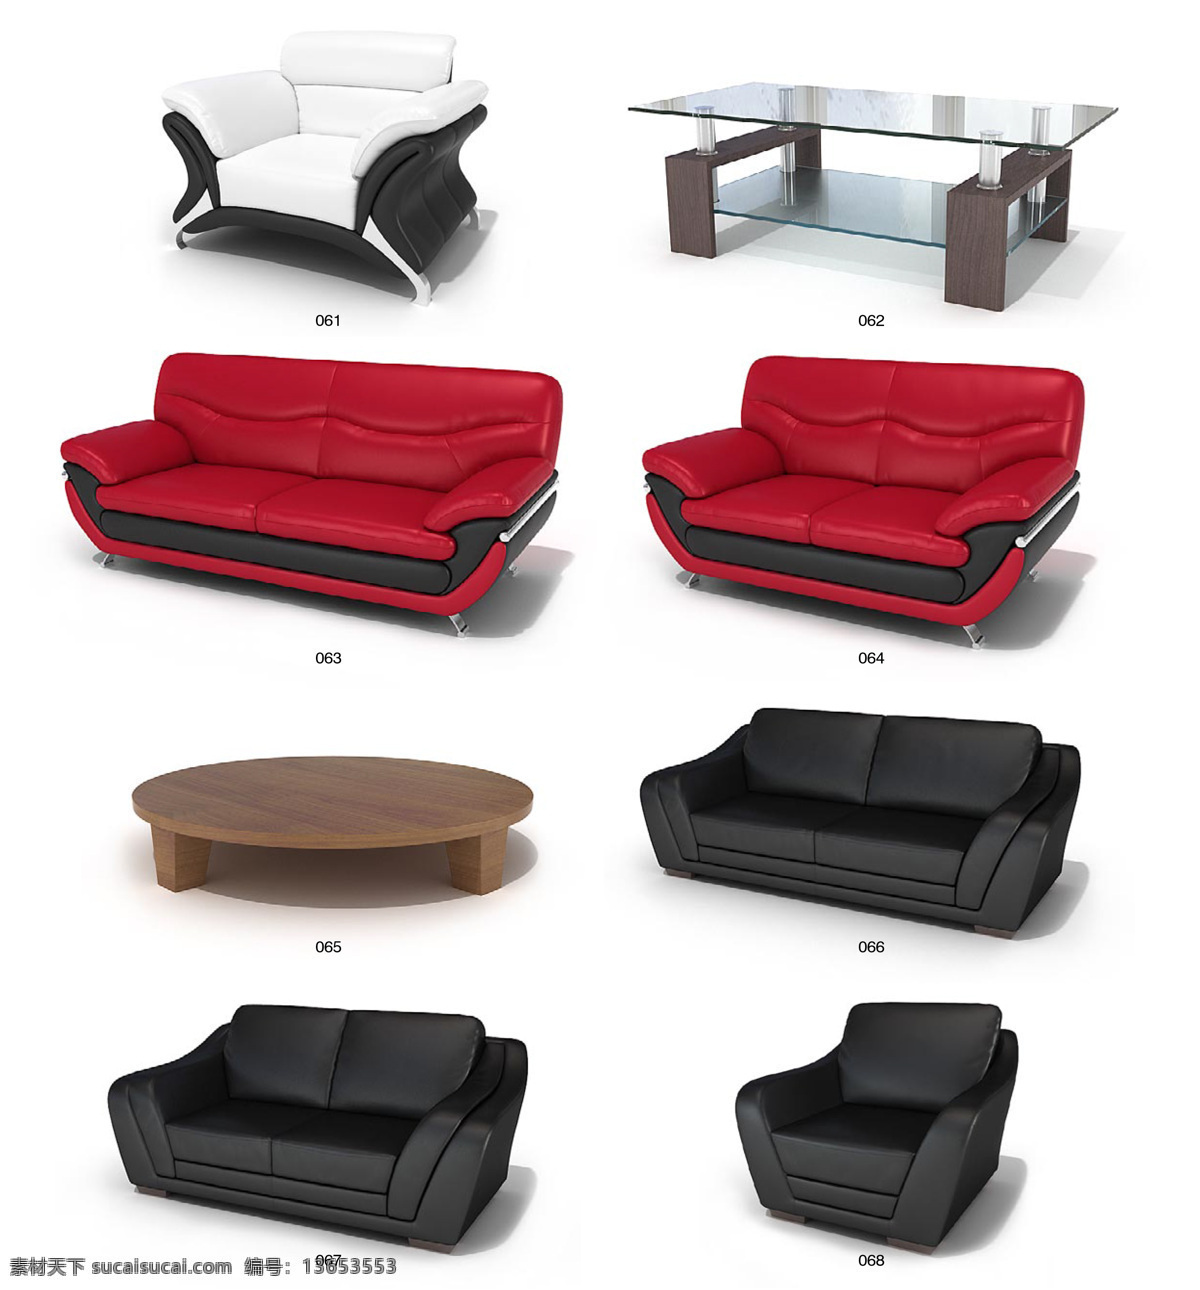 精美 沙发椅子 茶几 max 模型 带 材质 贴图 3d家具模型 3d模型素材 3d设计模型 创意沙发 家具模型 沙发 白色